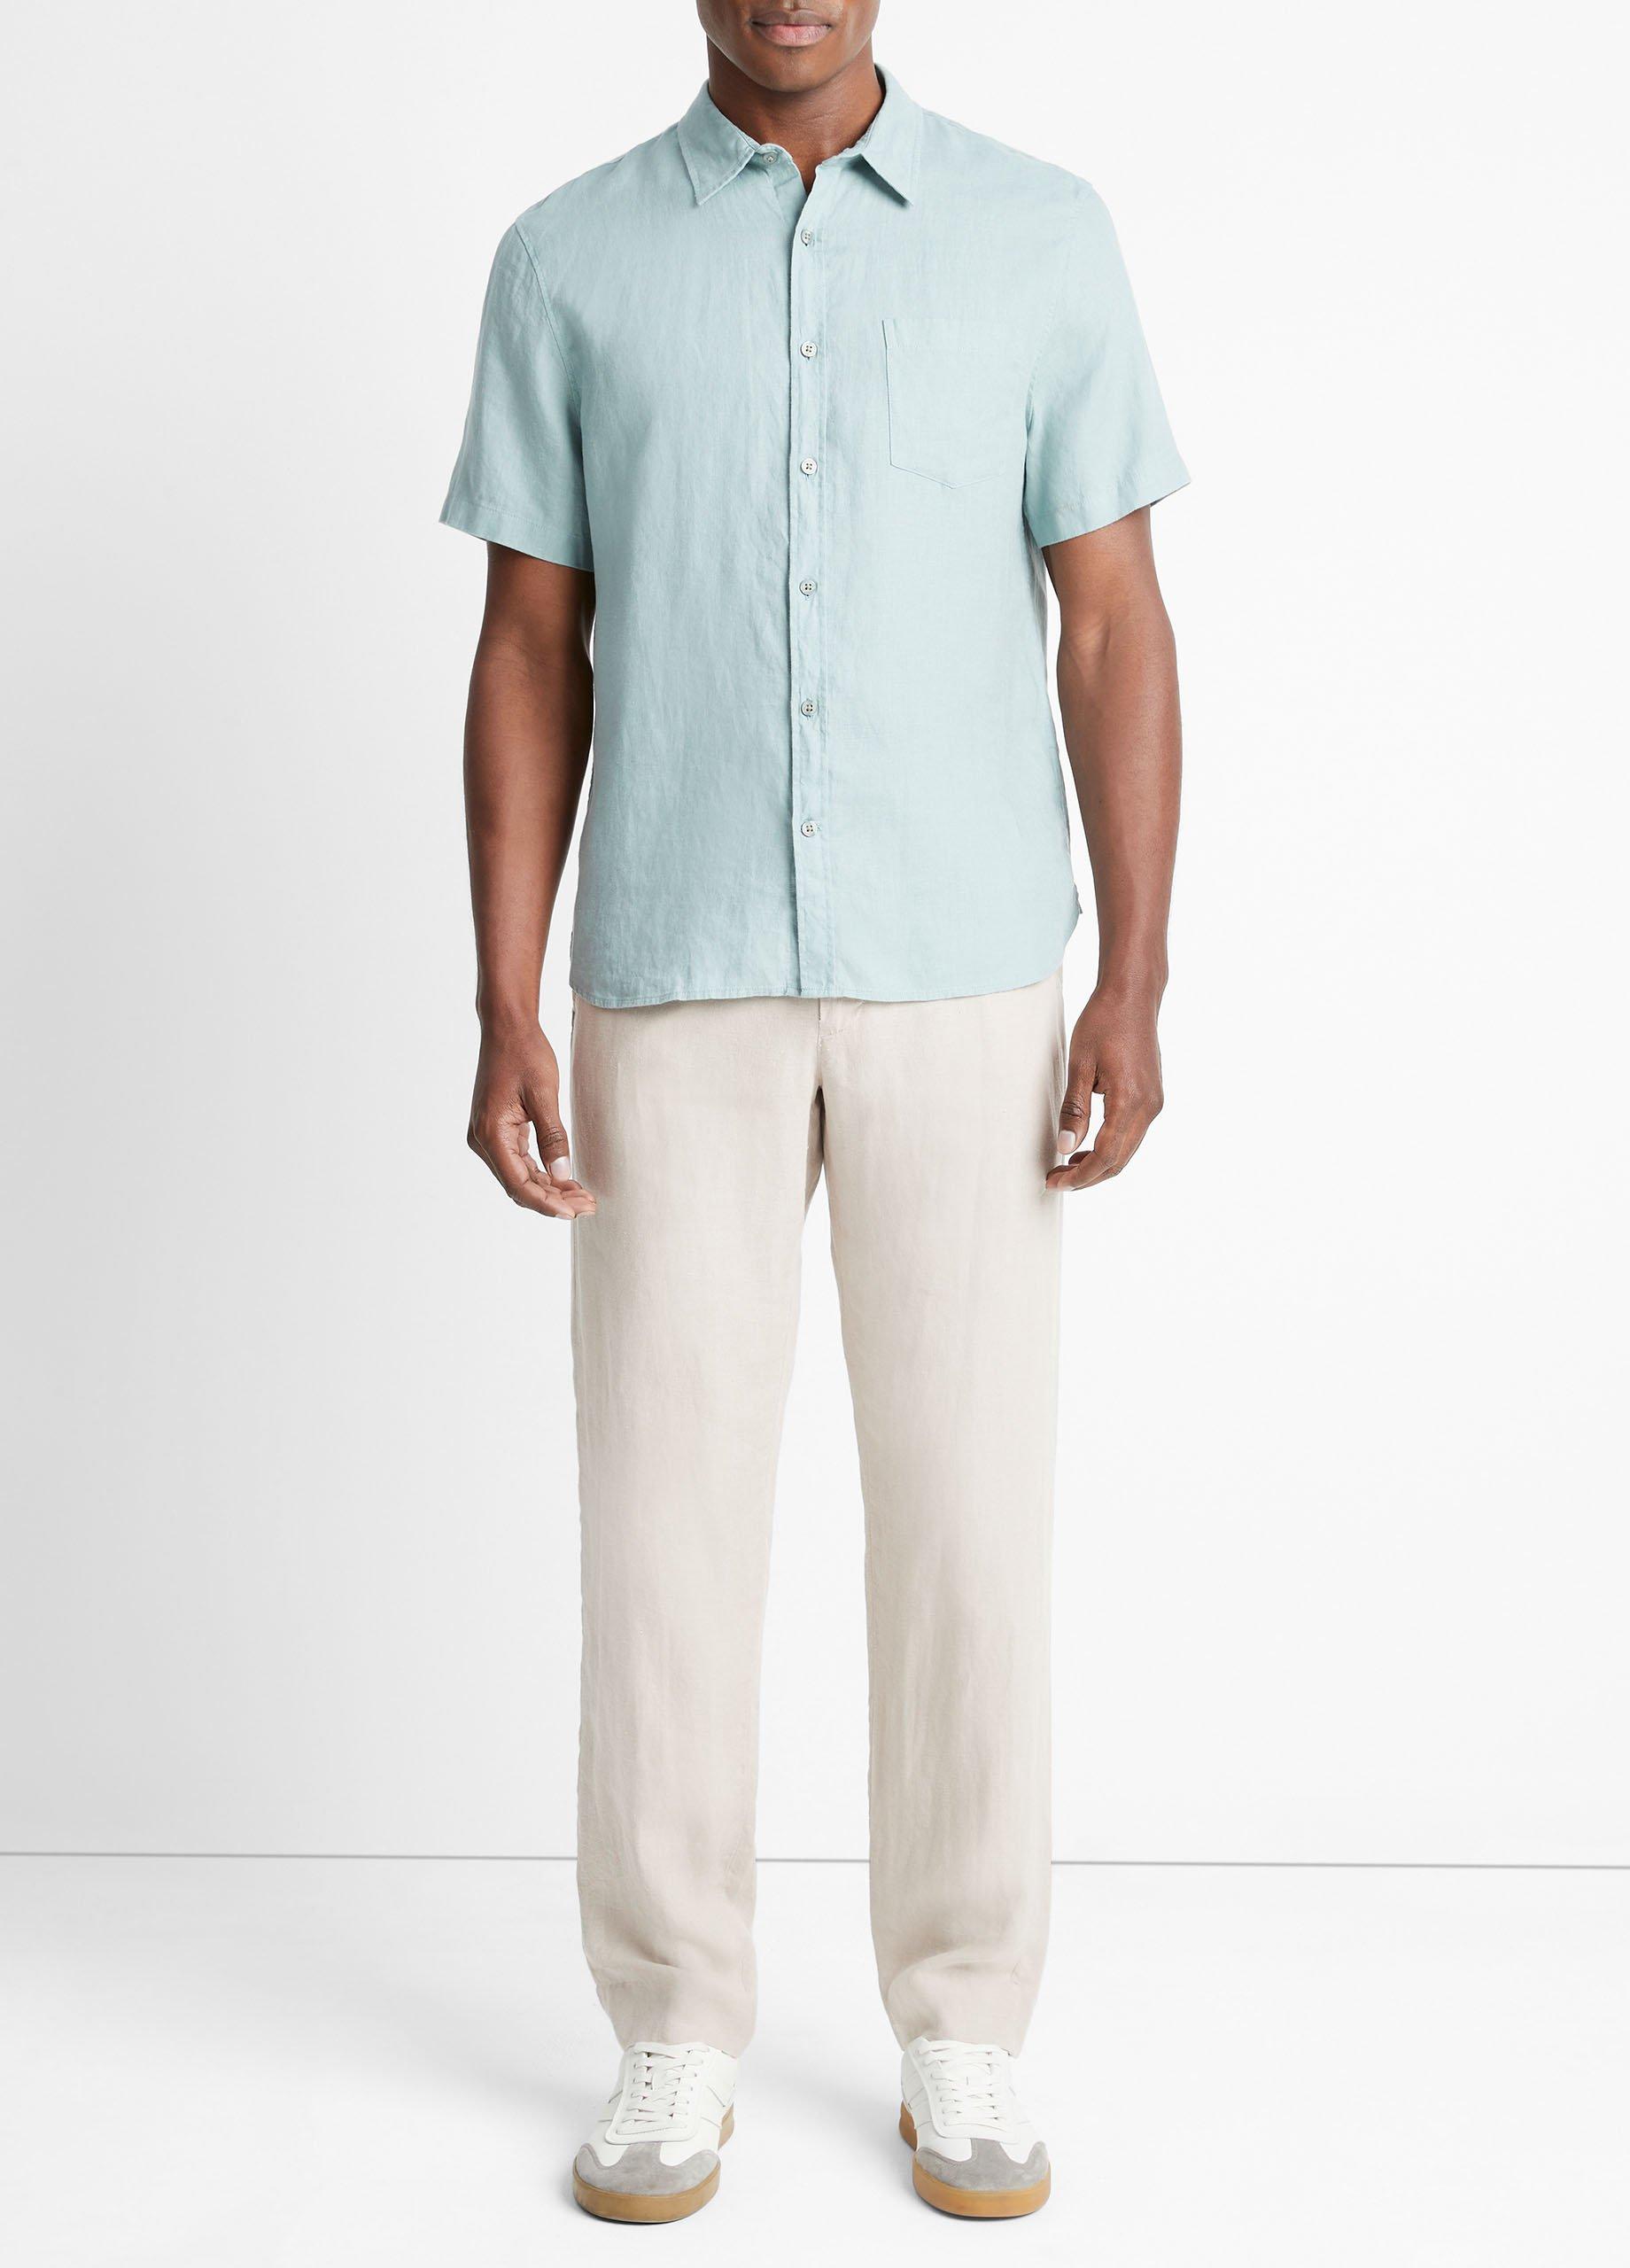 Linen Short-Sleeve Shirt, Ceramic Blue, Size XL Vince